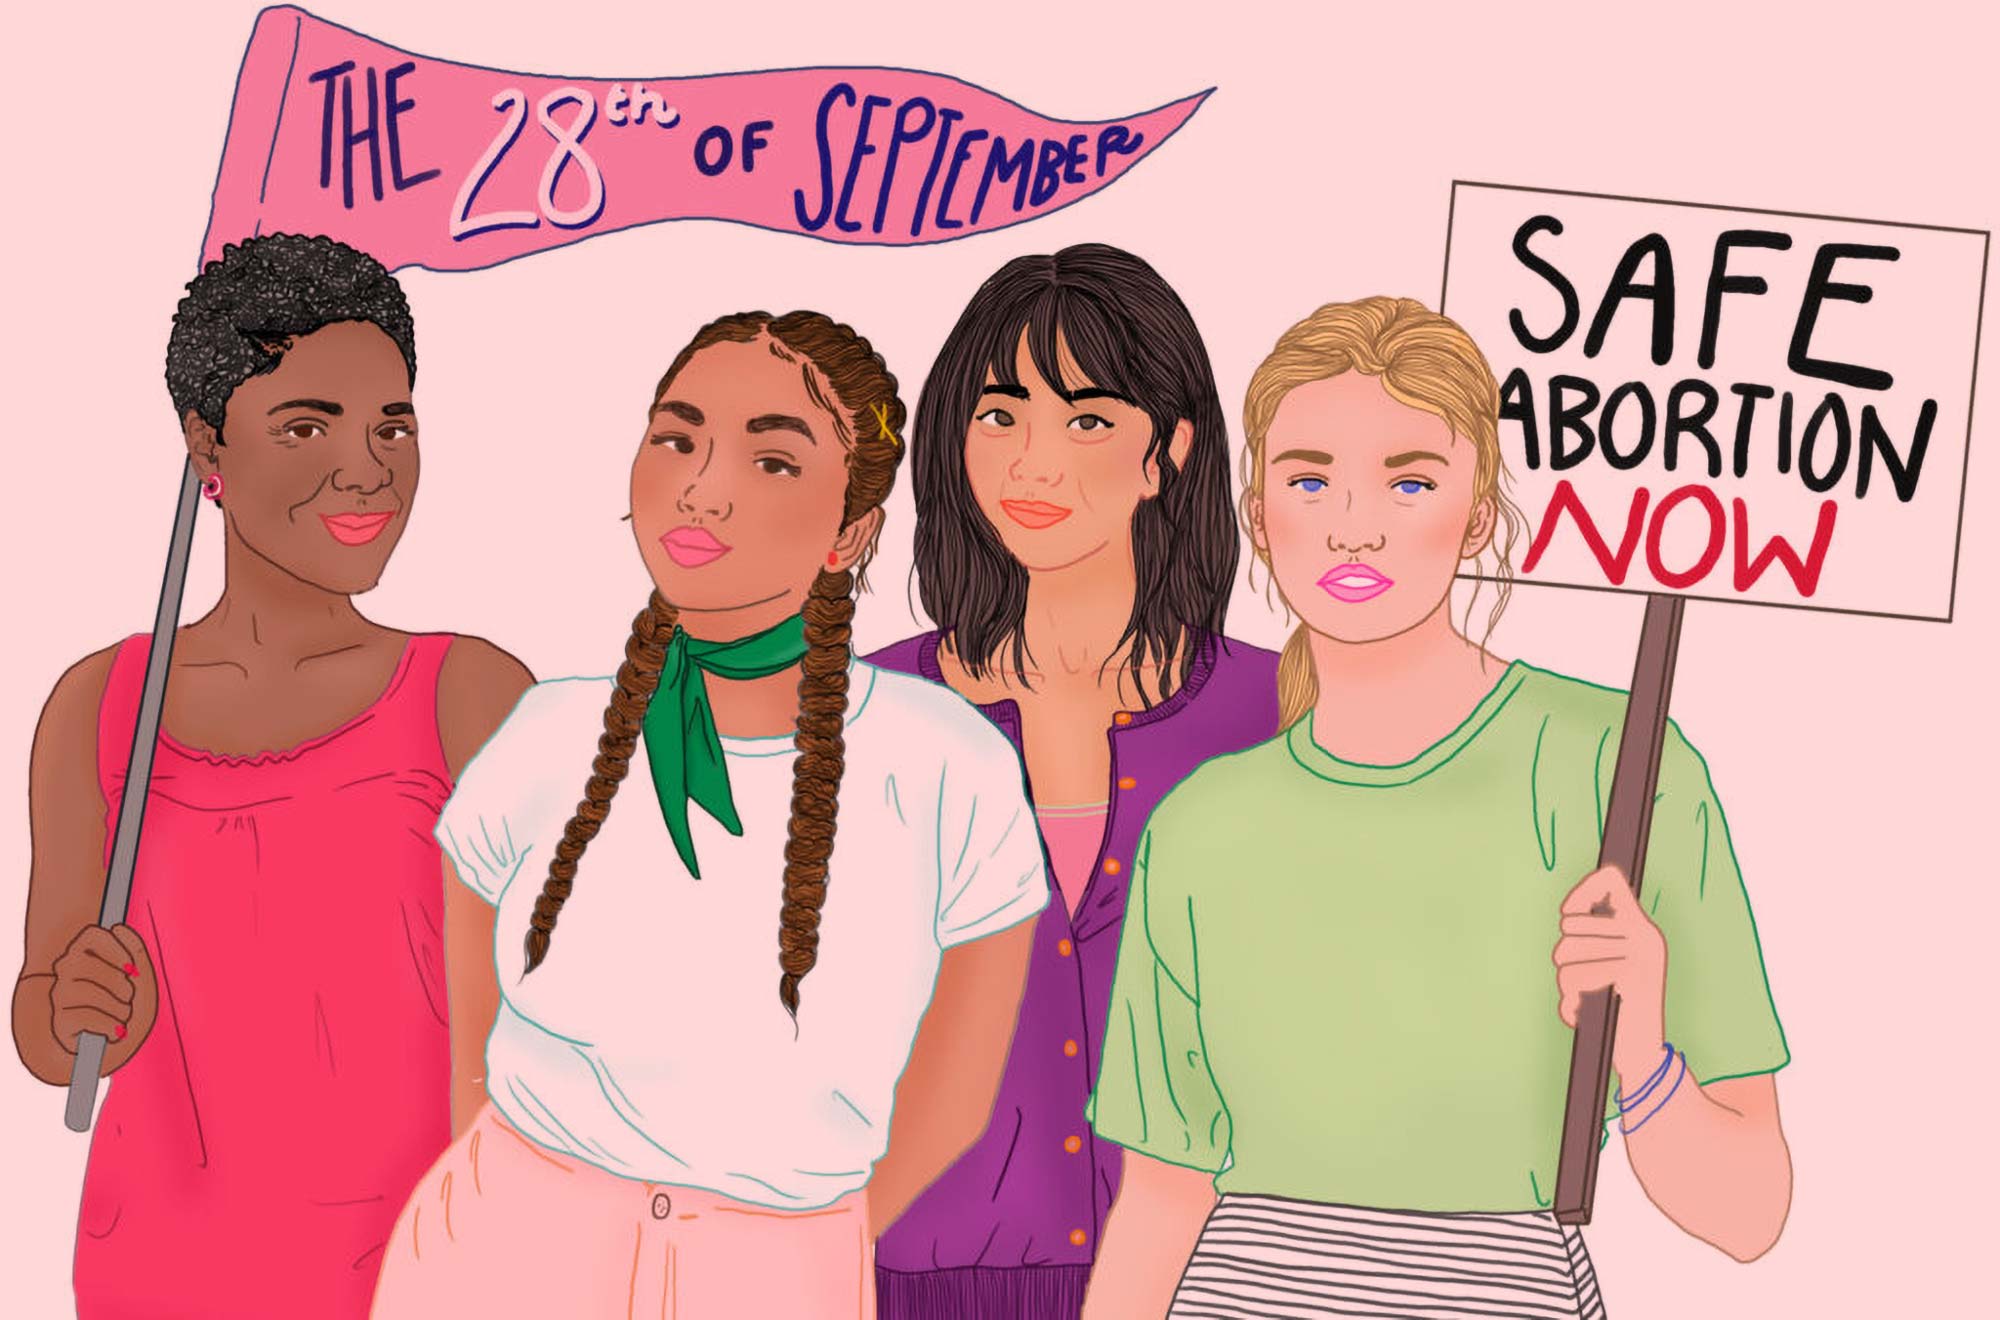 Ilustracja - cztery kobiety o różnych kolorach skóry stoją razem z transparentami świętującymi dzień bezpiecznej aborcji.